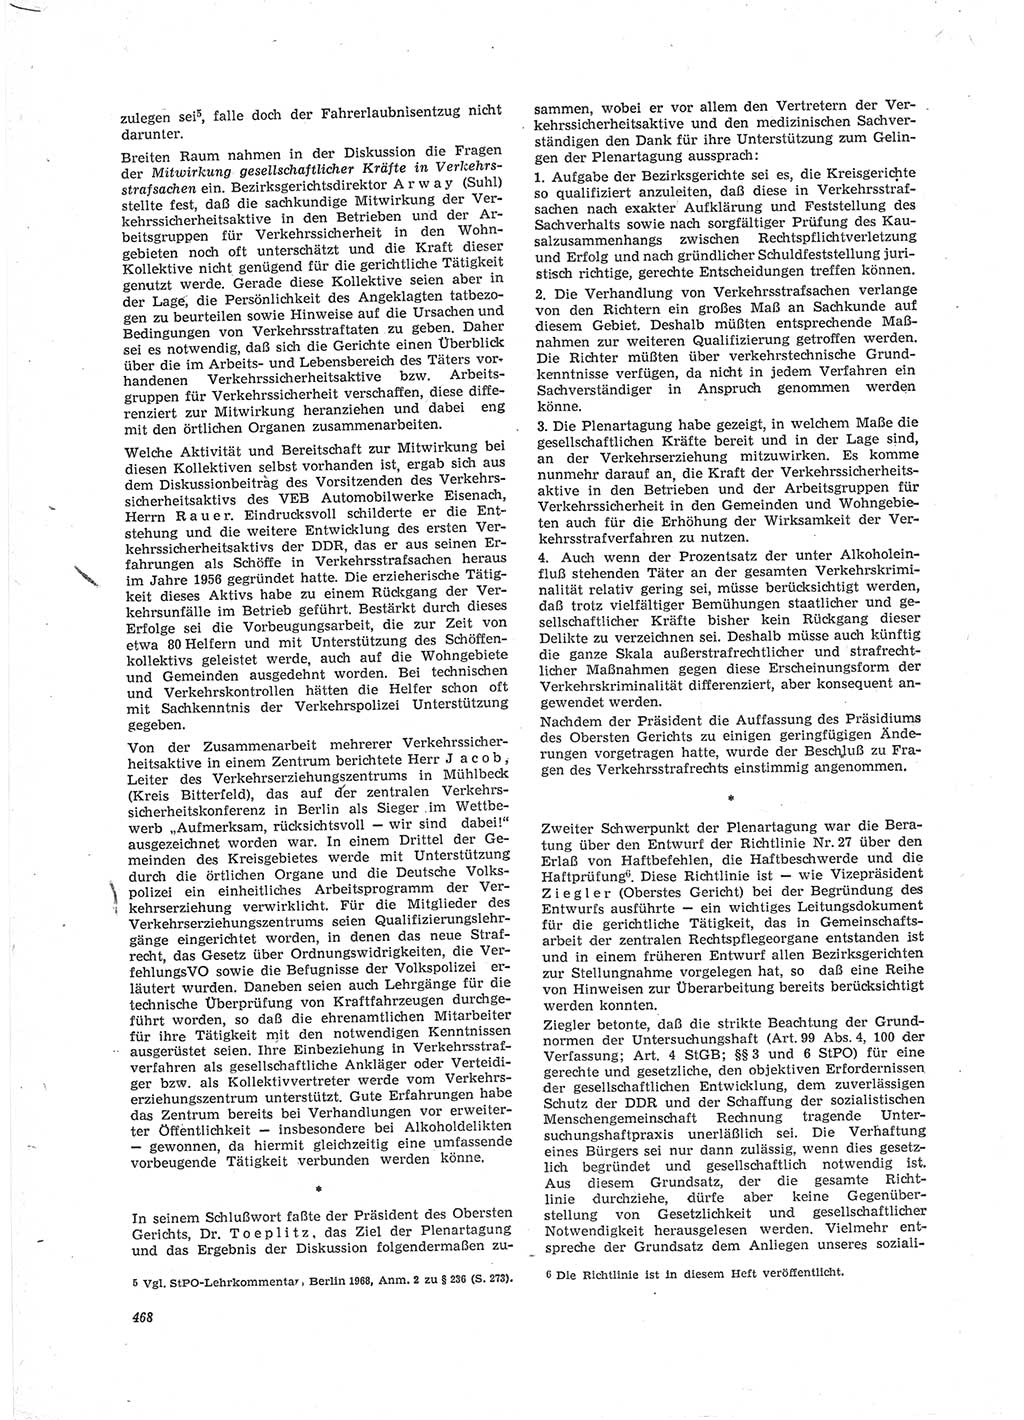 Neue Justiz (NJ), Zeitschrift für Recht und Rechtswissenschaft [Deutsche Demokratische Republik (DDR)], 23. Jahrgang 1969, Seite 468 (NJ DDR 1969, S. 468)